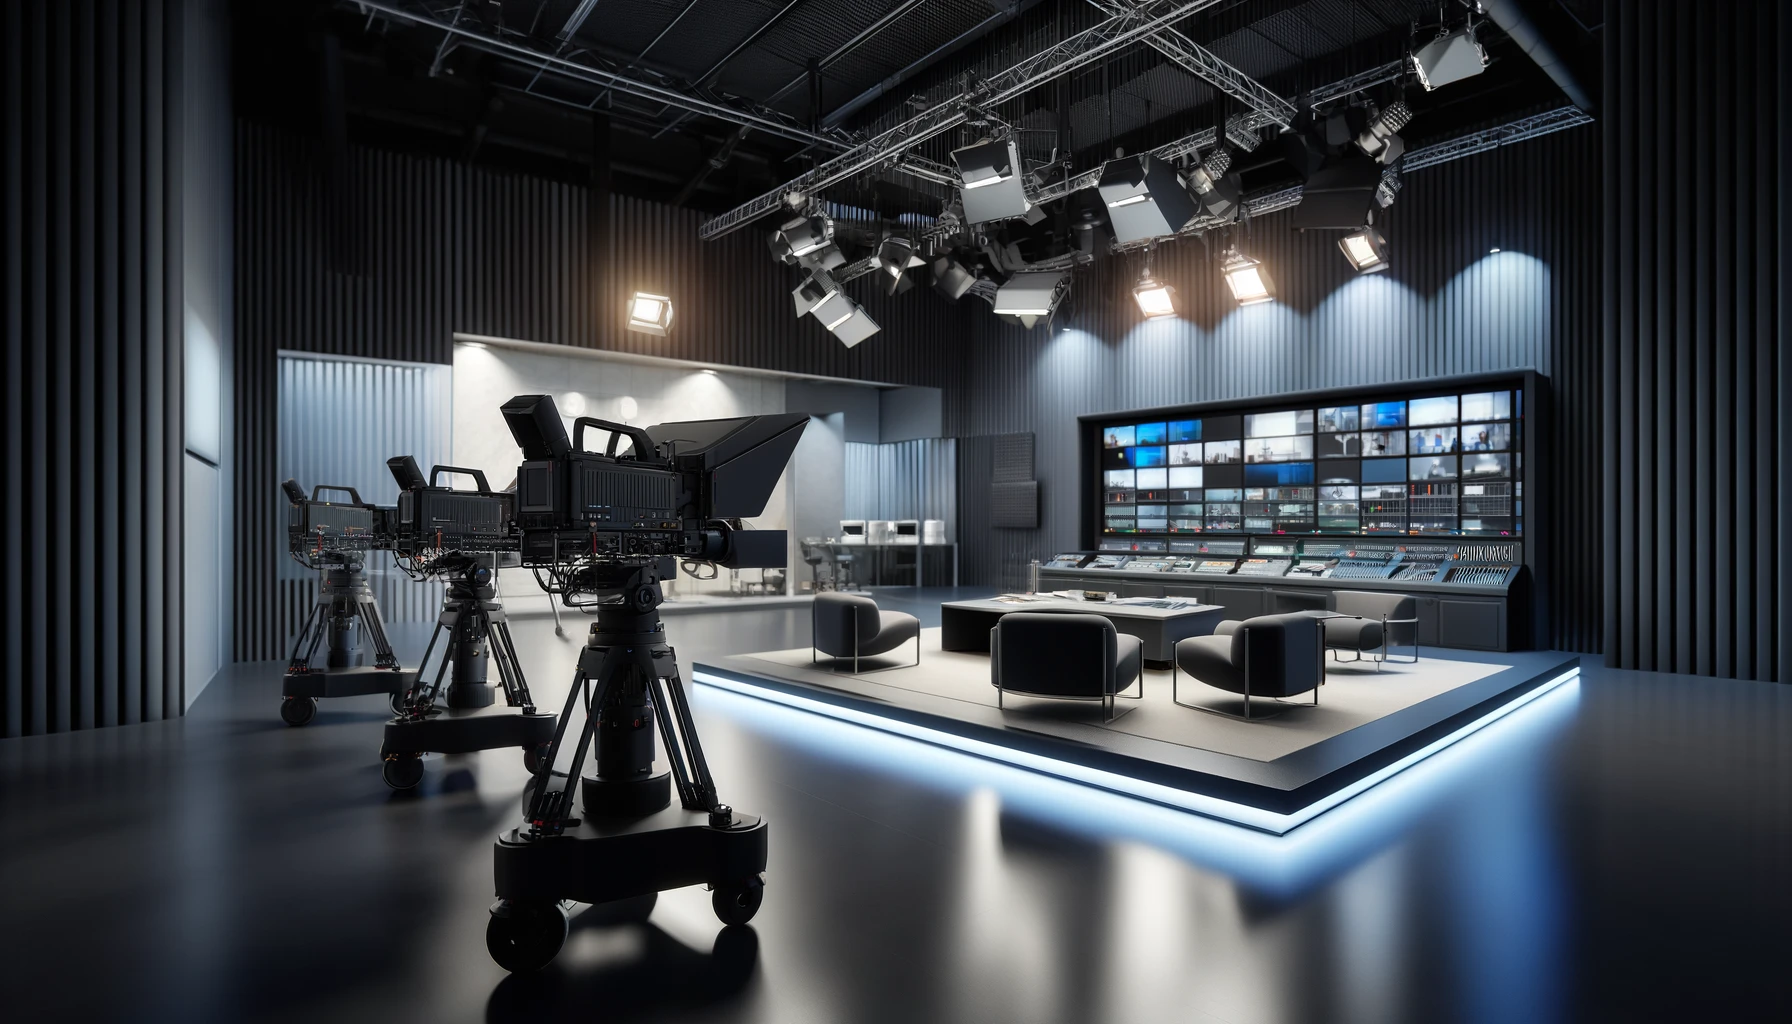 Studio TV fait maison (DIY) vers le studio professionnel : La transition essentielle pour grandes entreprises